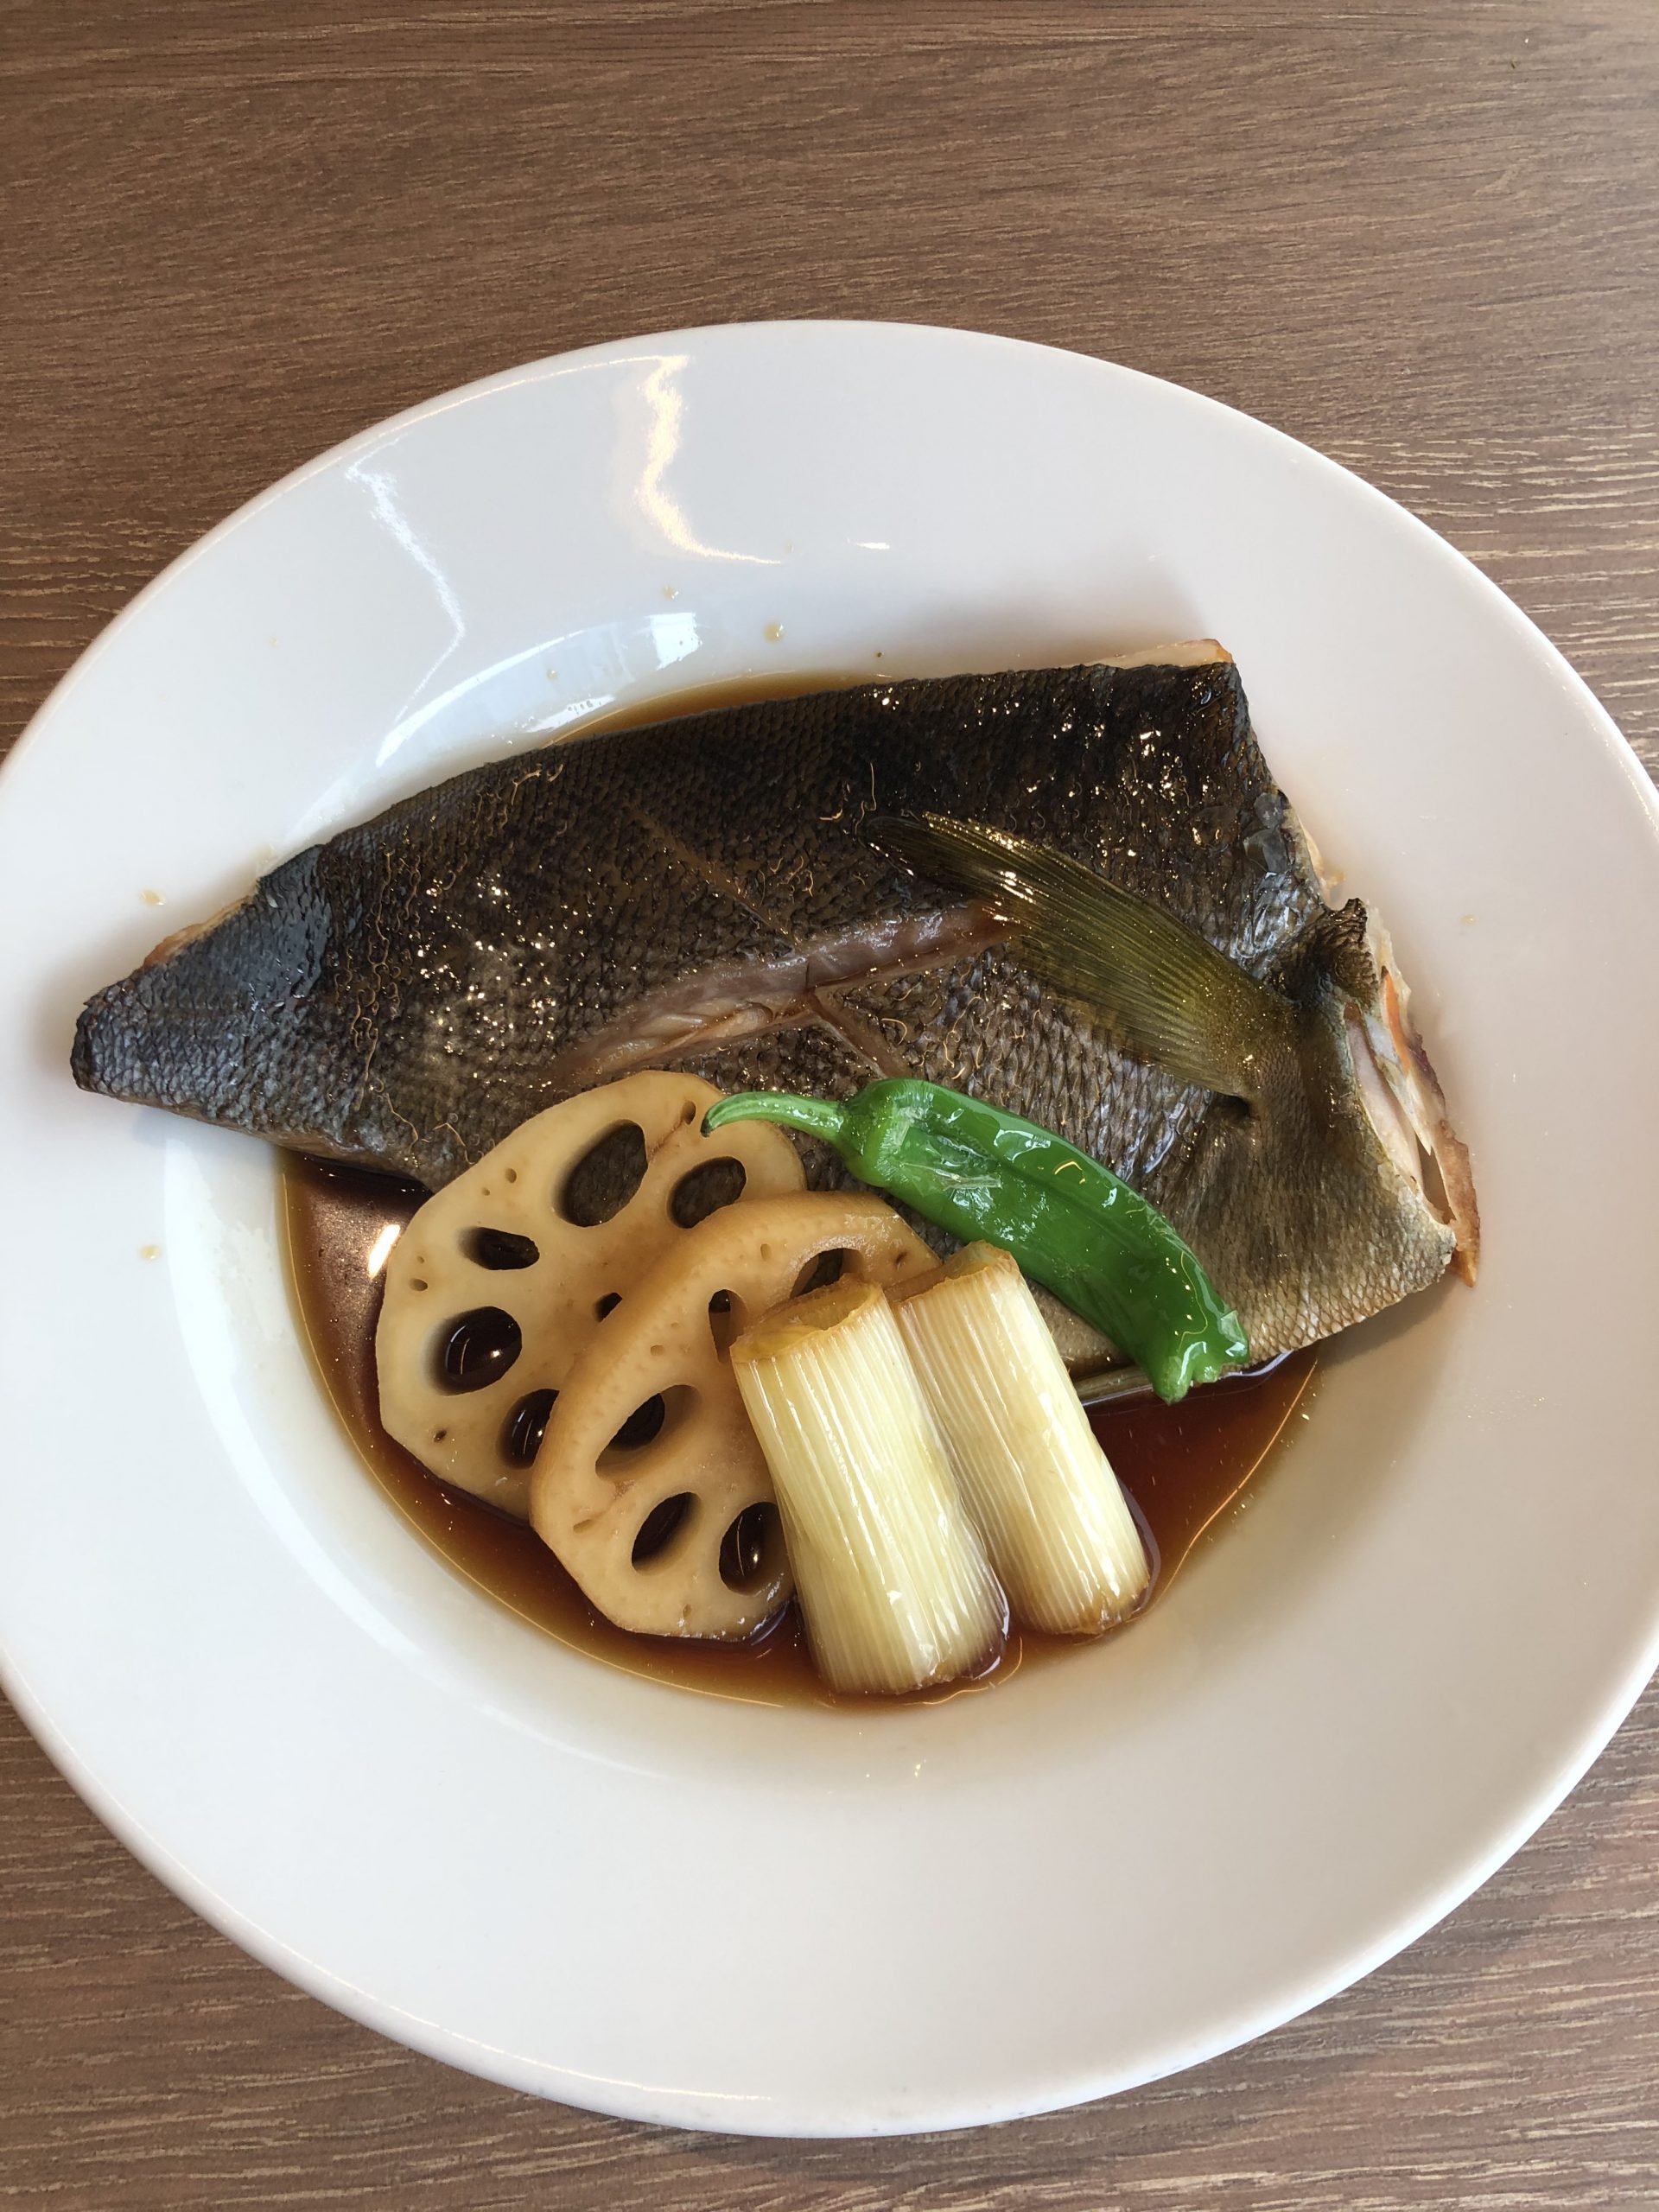 イサキとレンコンの煮付け 海の恵み 食の底力 Japan 公式レシピサイト